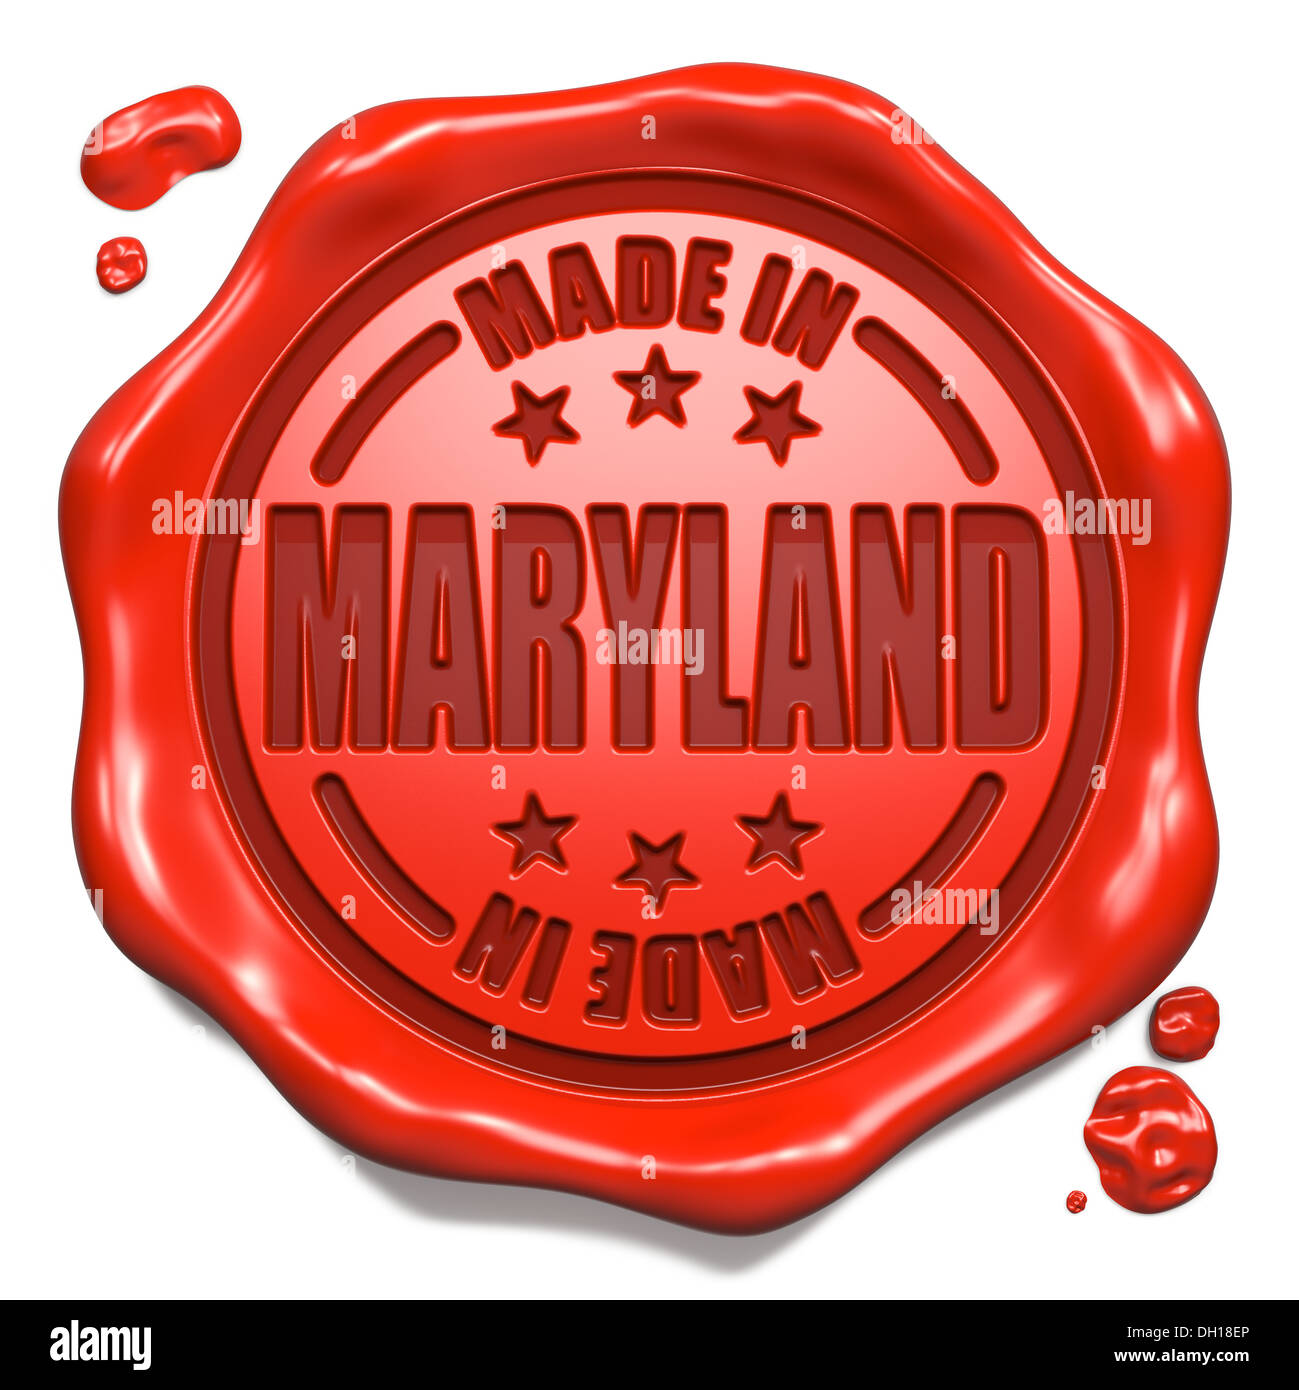 Realizzati in Maryland - Timbro sul sigillo di cera rossa. Foto Stock